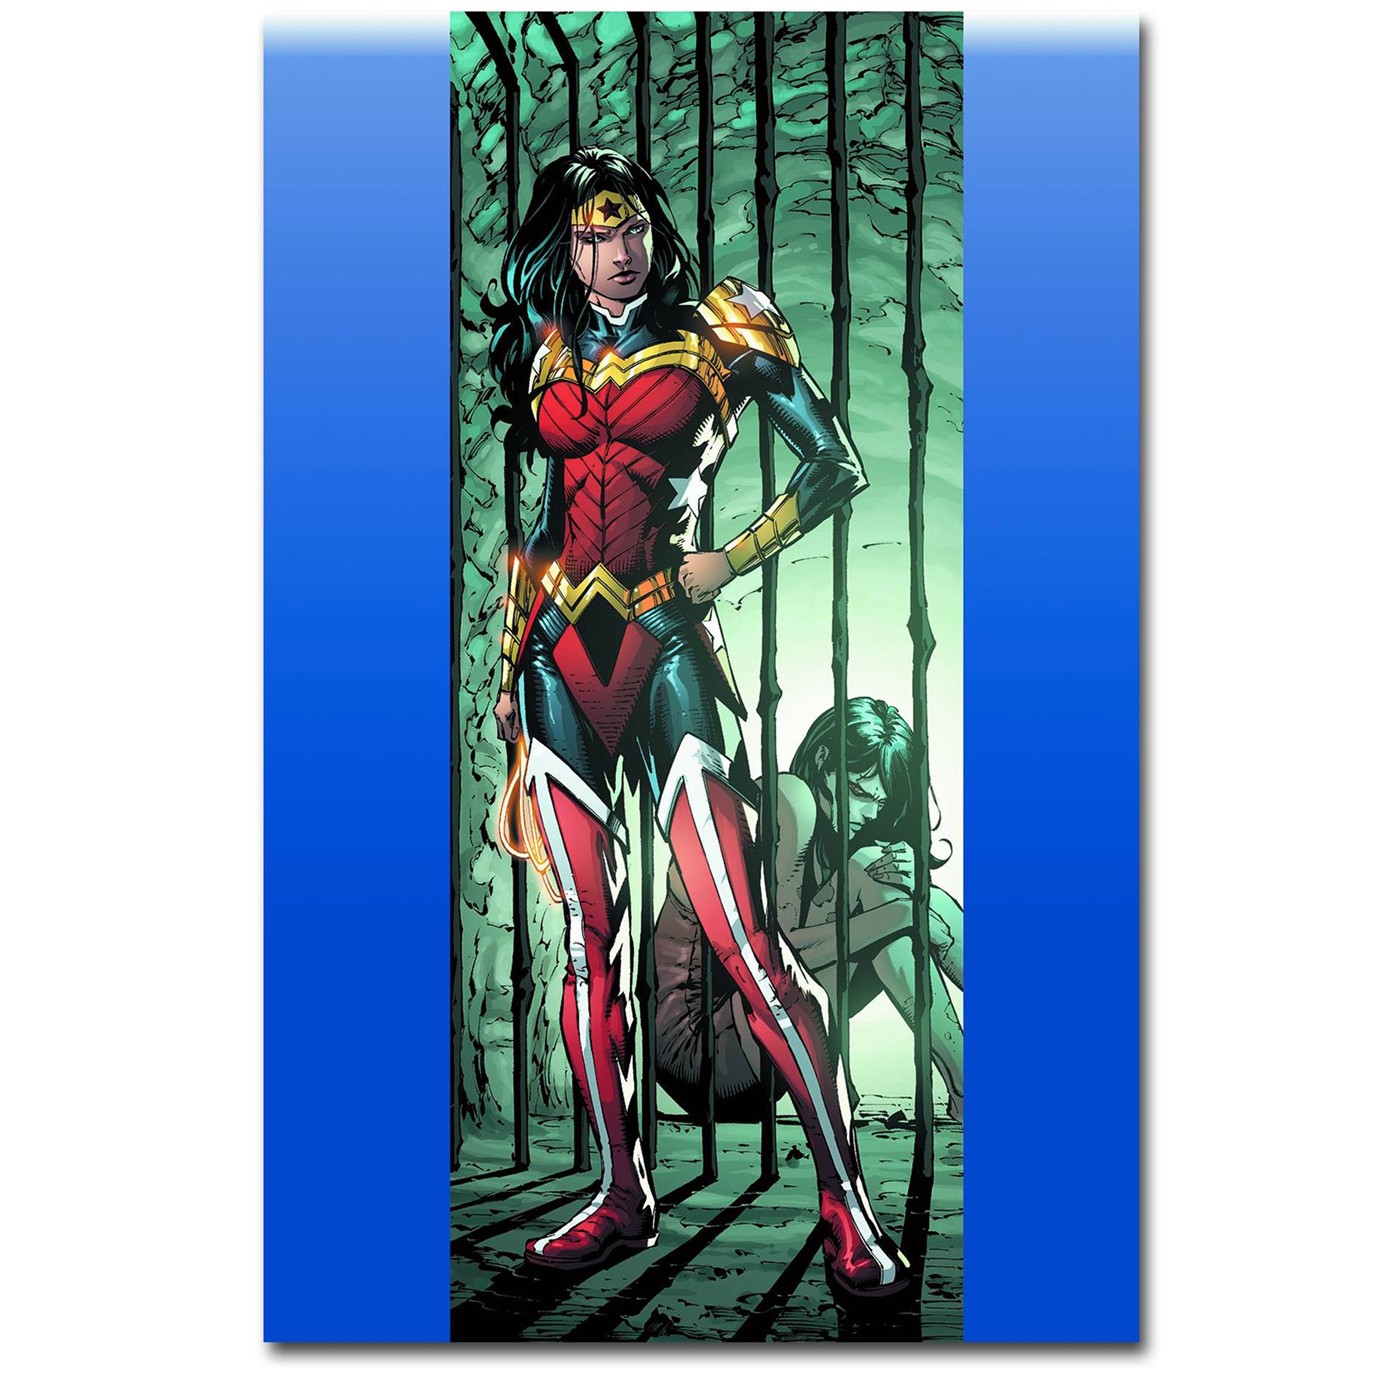 Wonder Woman Comic Book Binge Pack for October